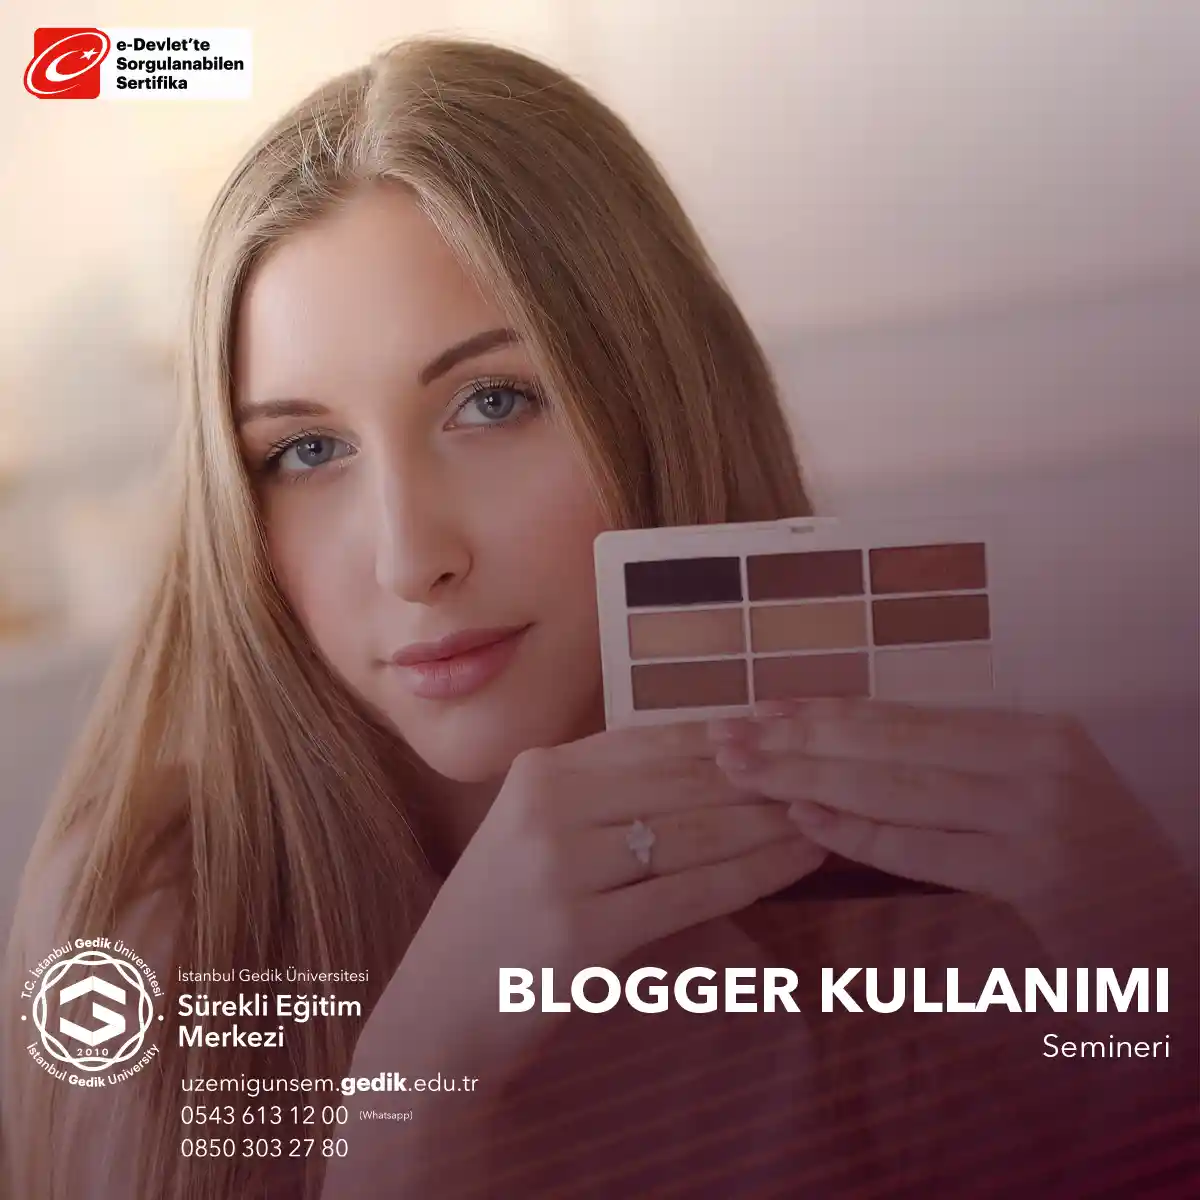 Blogger Kullanımı Semineri, katılımcılara blog oluşturmanın ve yönetmenin inceliklerini öğrenme fırsatı sunarak kişisel veya iş bloglarını daha etkili bir şekilde yönetmeyi amaçlar.